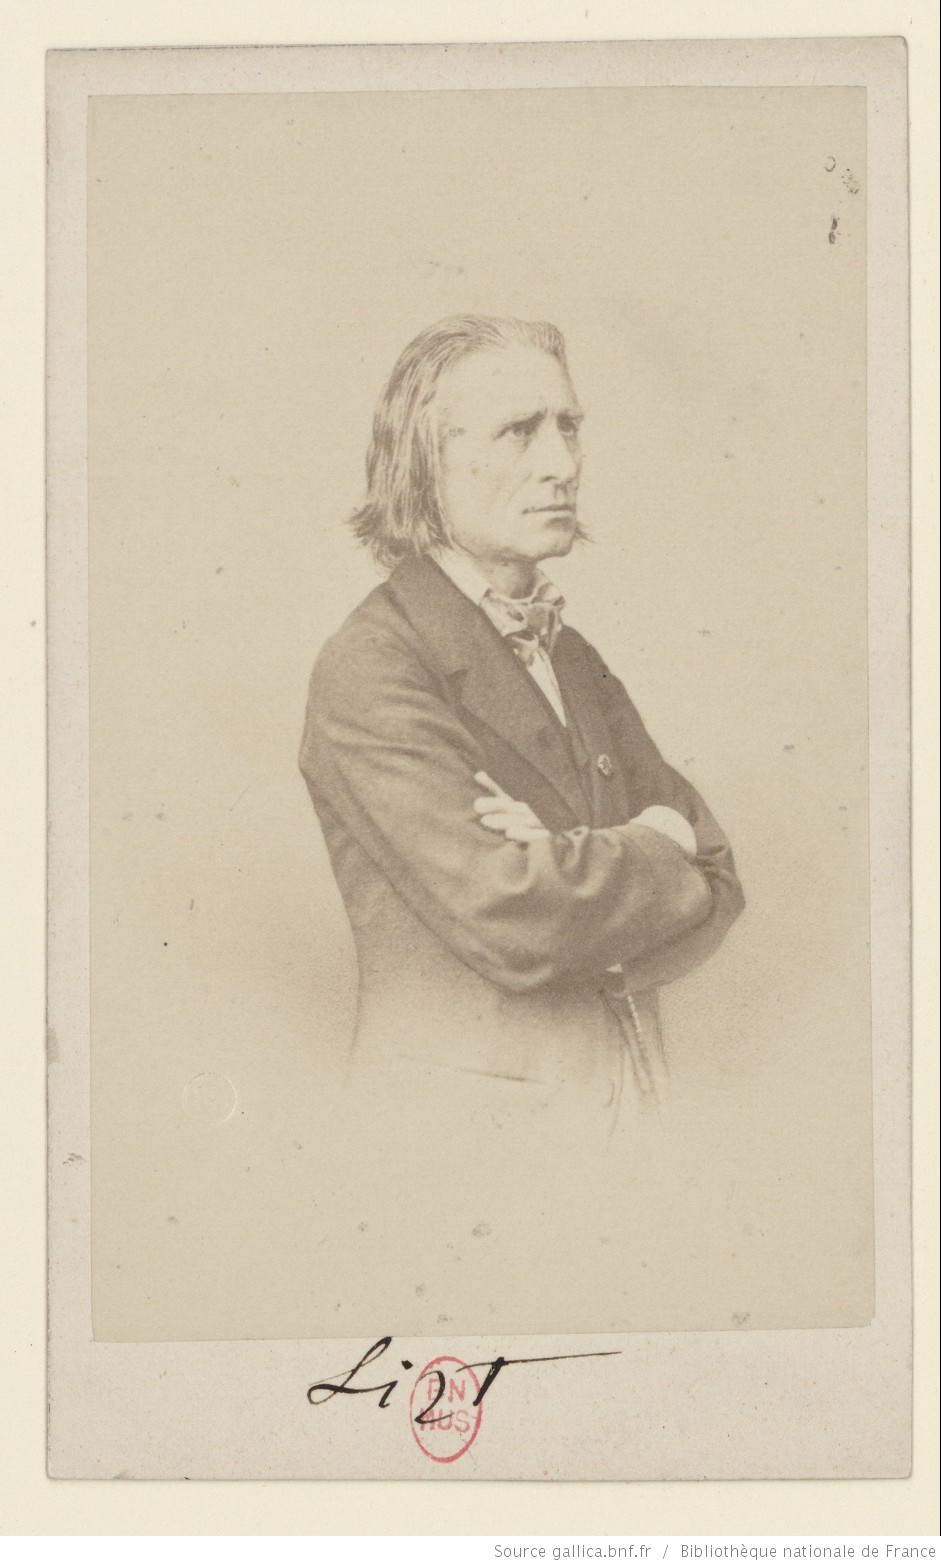 Franz Liszt, portrait photographique, cachet 